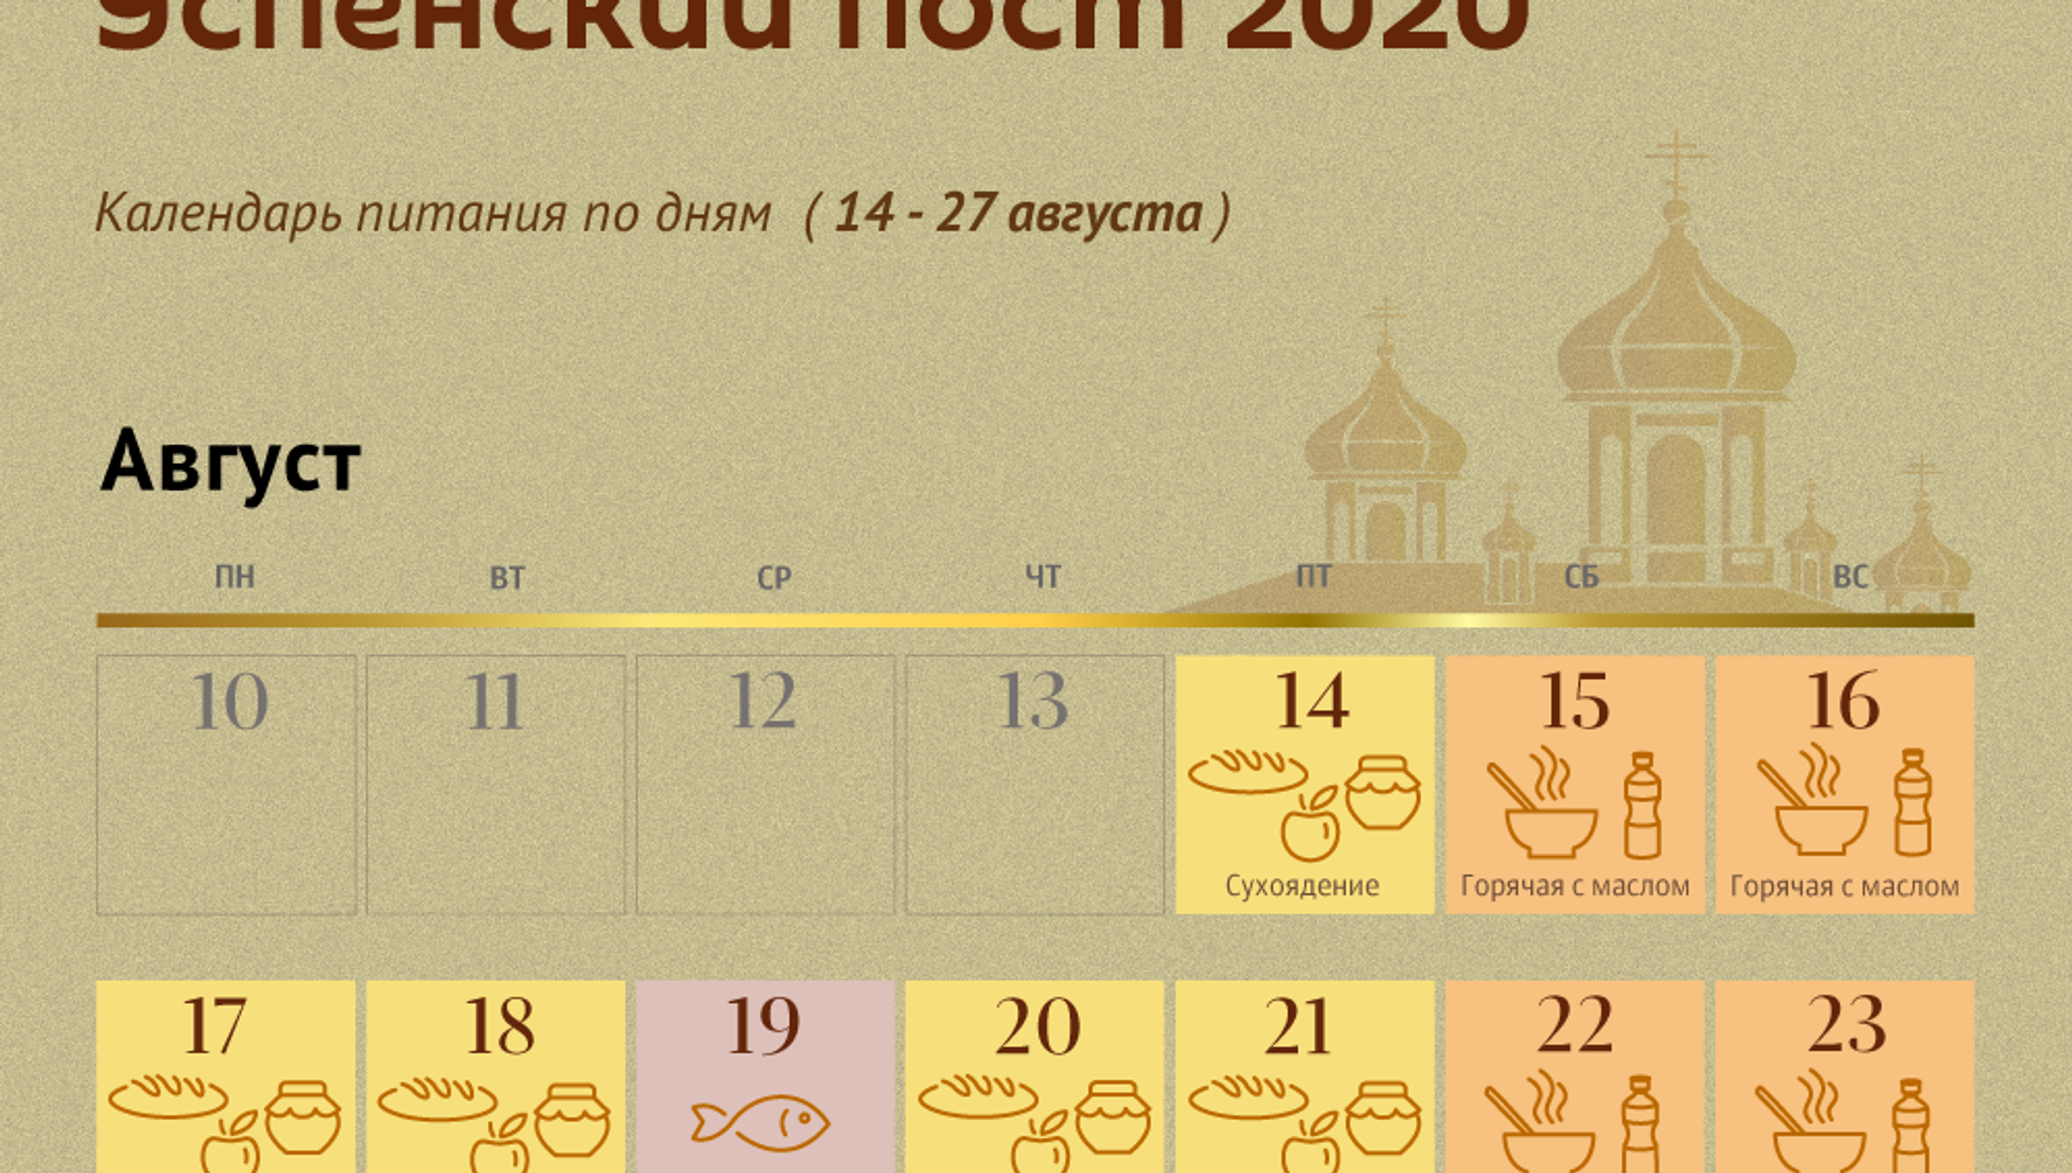 9 августа 2021. Пост в августе. Успенский пост в 2022. Календарь поста август. Успенский пост 2020 календарь питания по дням.